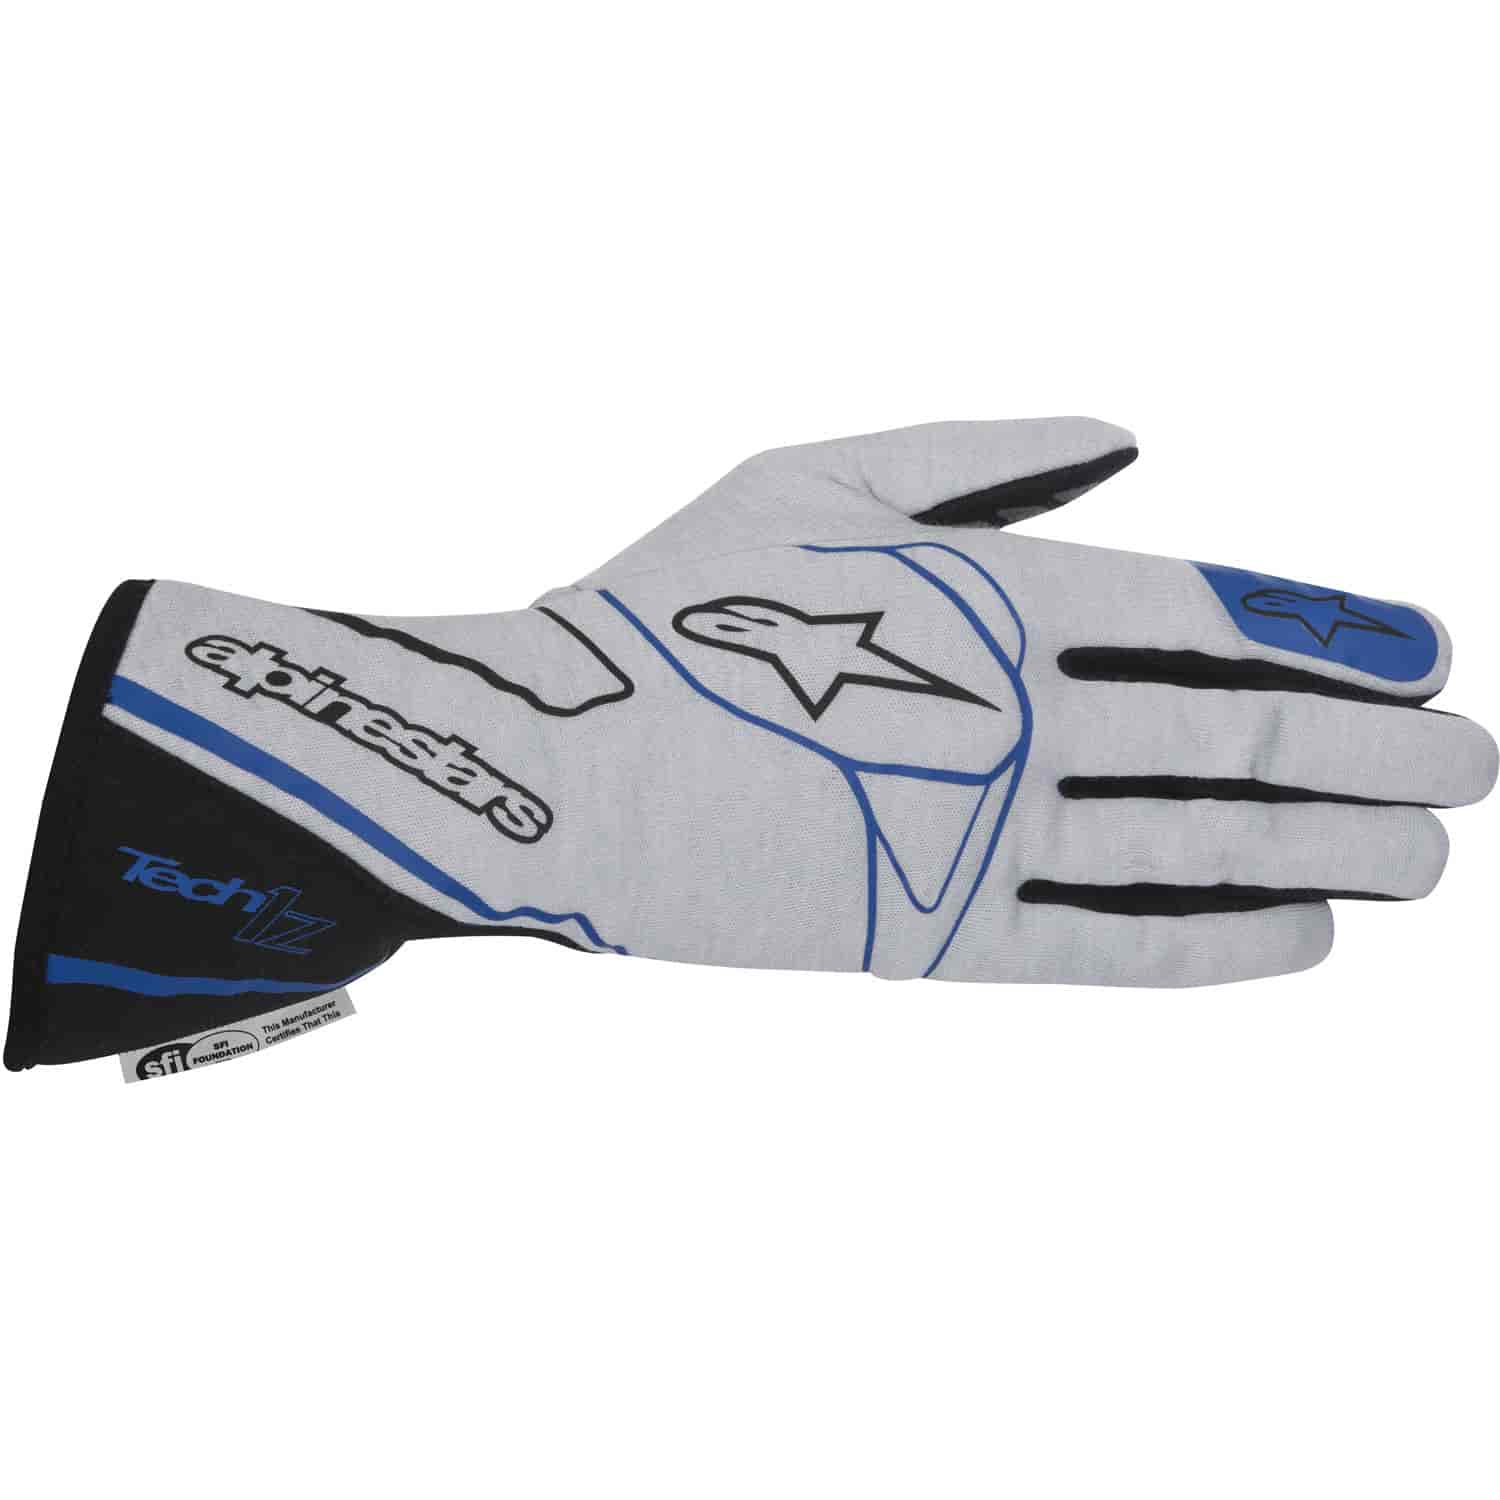 Tech 1-Z Glove Silver/Black/Blue SFI 3.3/5